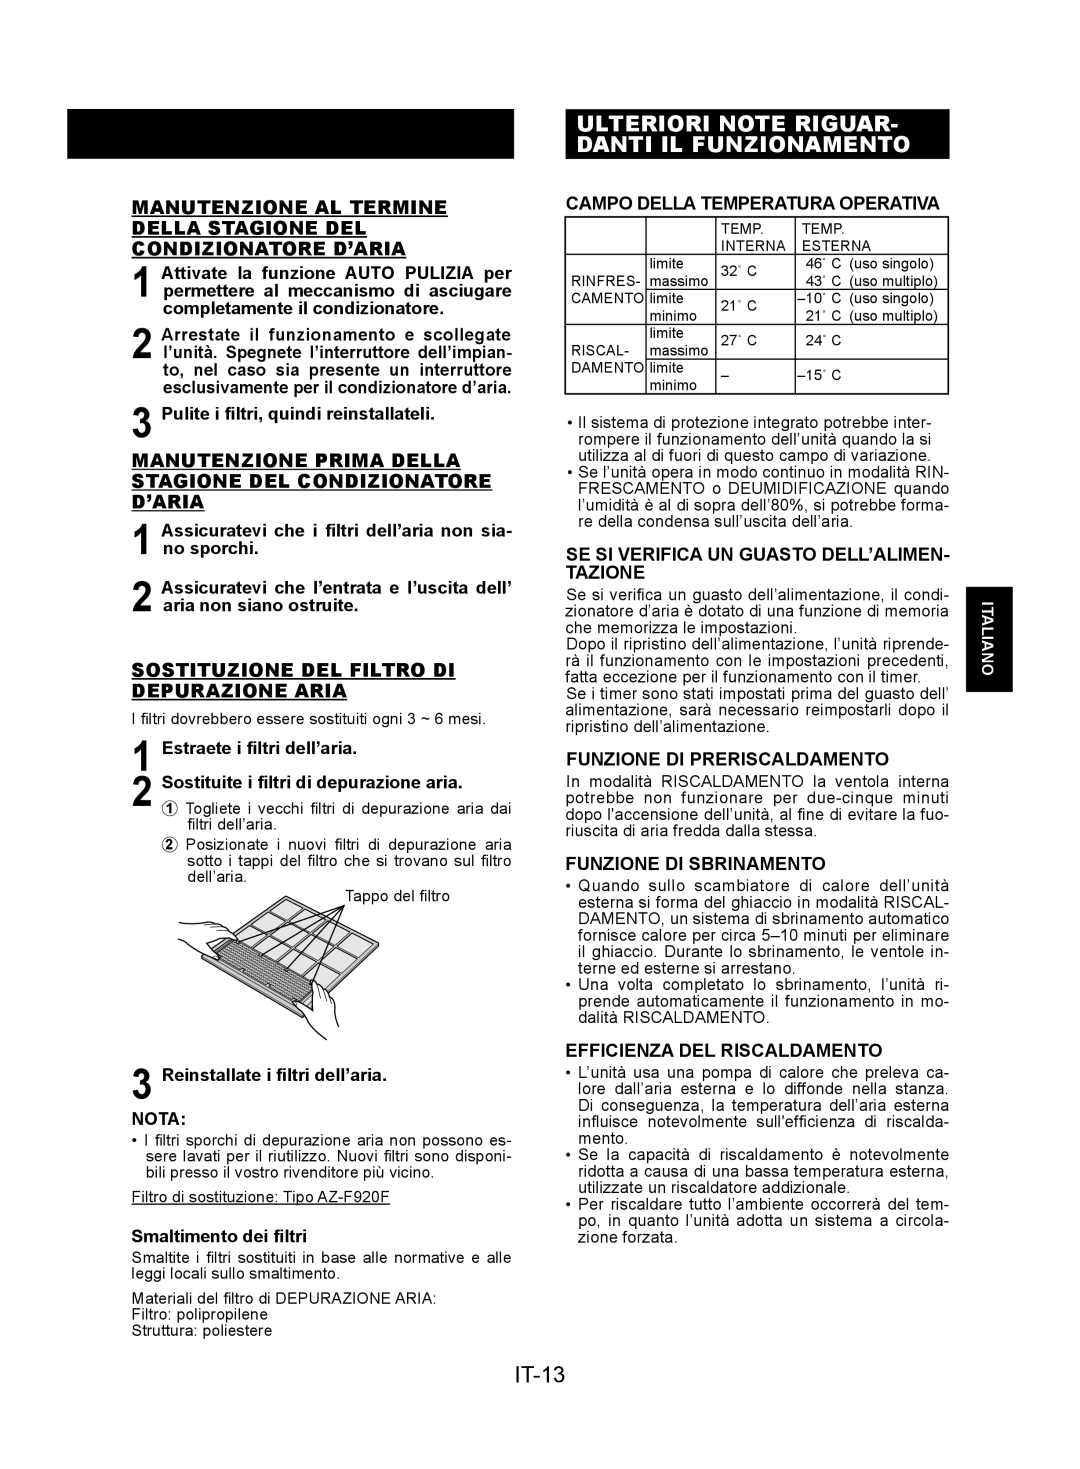 Sharp AY-XPC9JR Ulteriori Note Riguar- Danti Il Funzionamento, IT-13, Campo Della Temperatura Operativa, Italiano 